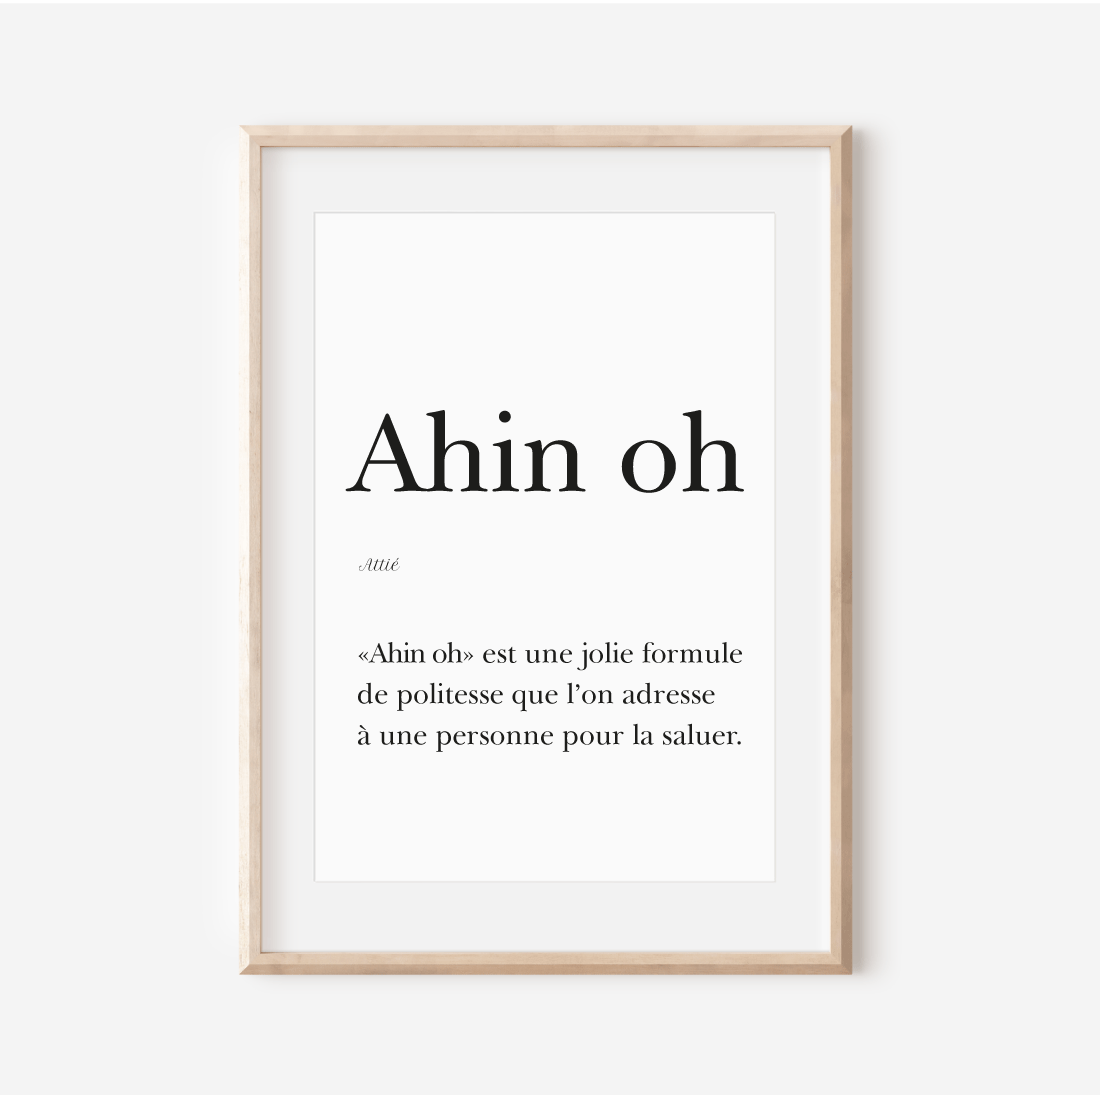 Affiche "Ahin" - "Bonjour" en Attié